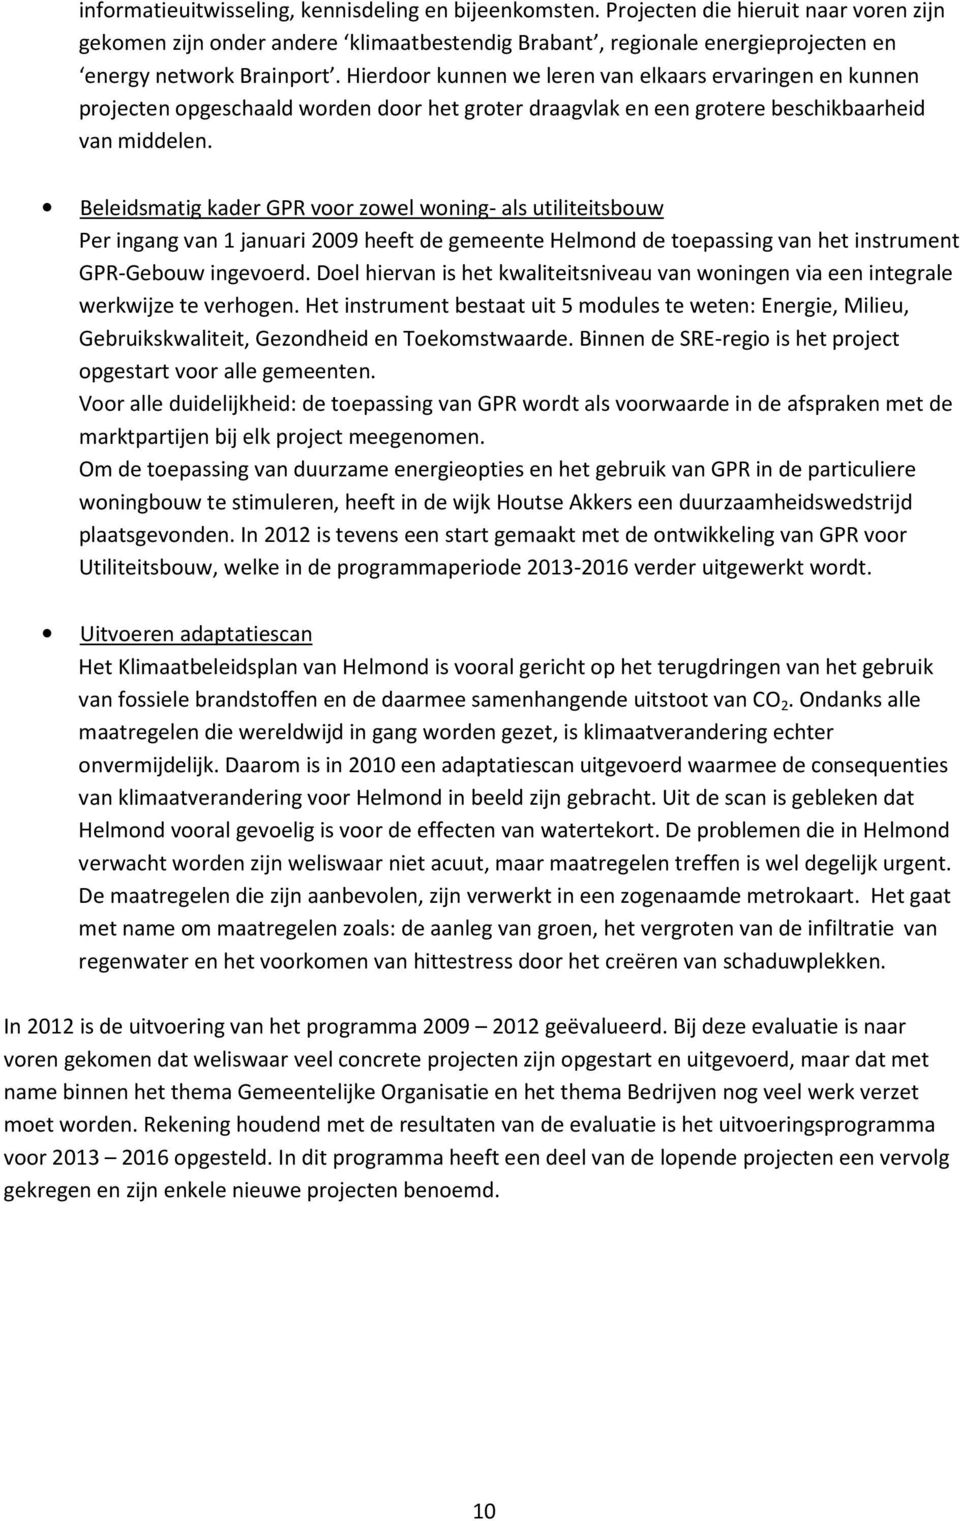 Beleidsmatig kader GPR voor zowel woning- als utiliteitsbouw Per ingang van 1 januari 2009 heeft de gemeente Helmond de toepassing van het instrument GPR-Gebouw ingevoerd.